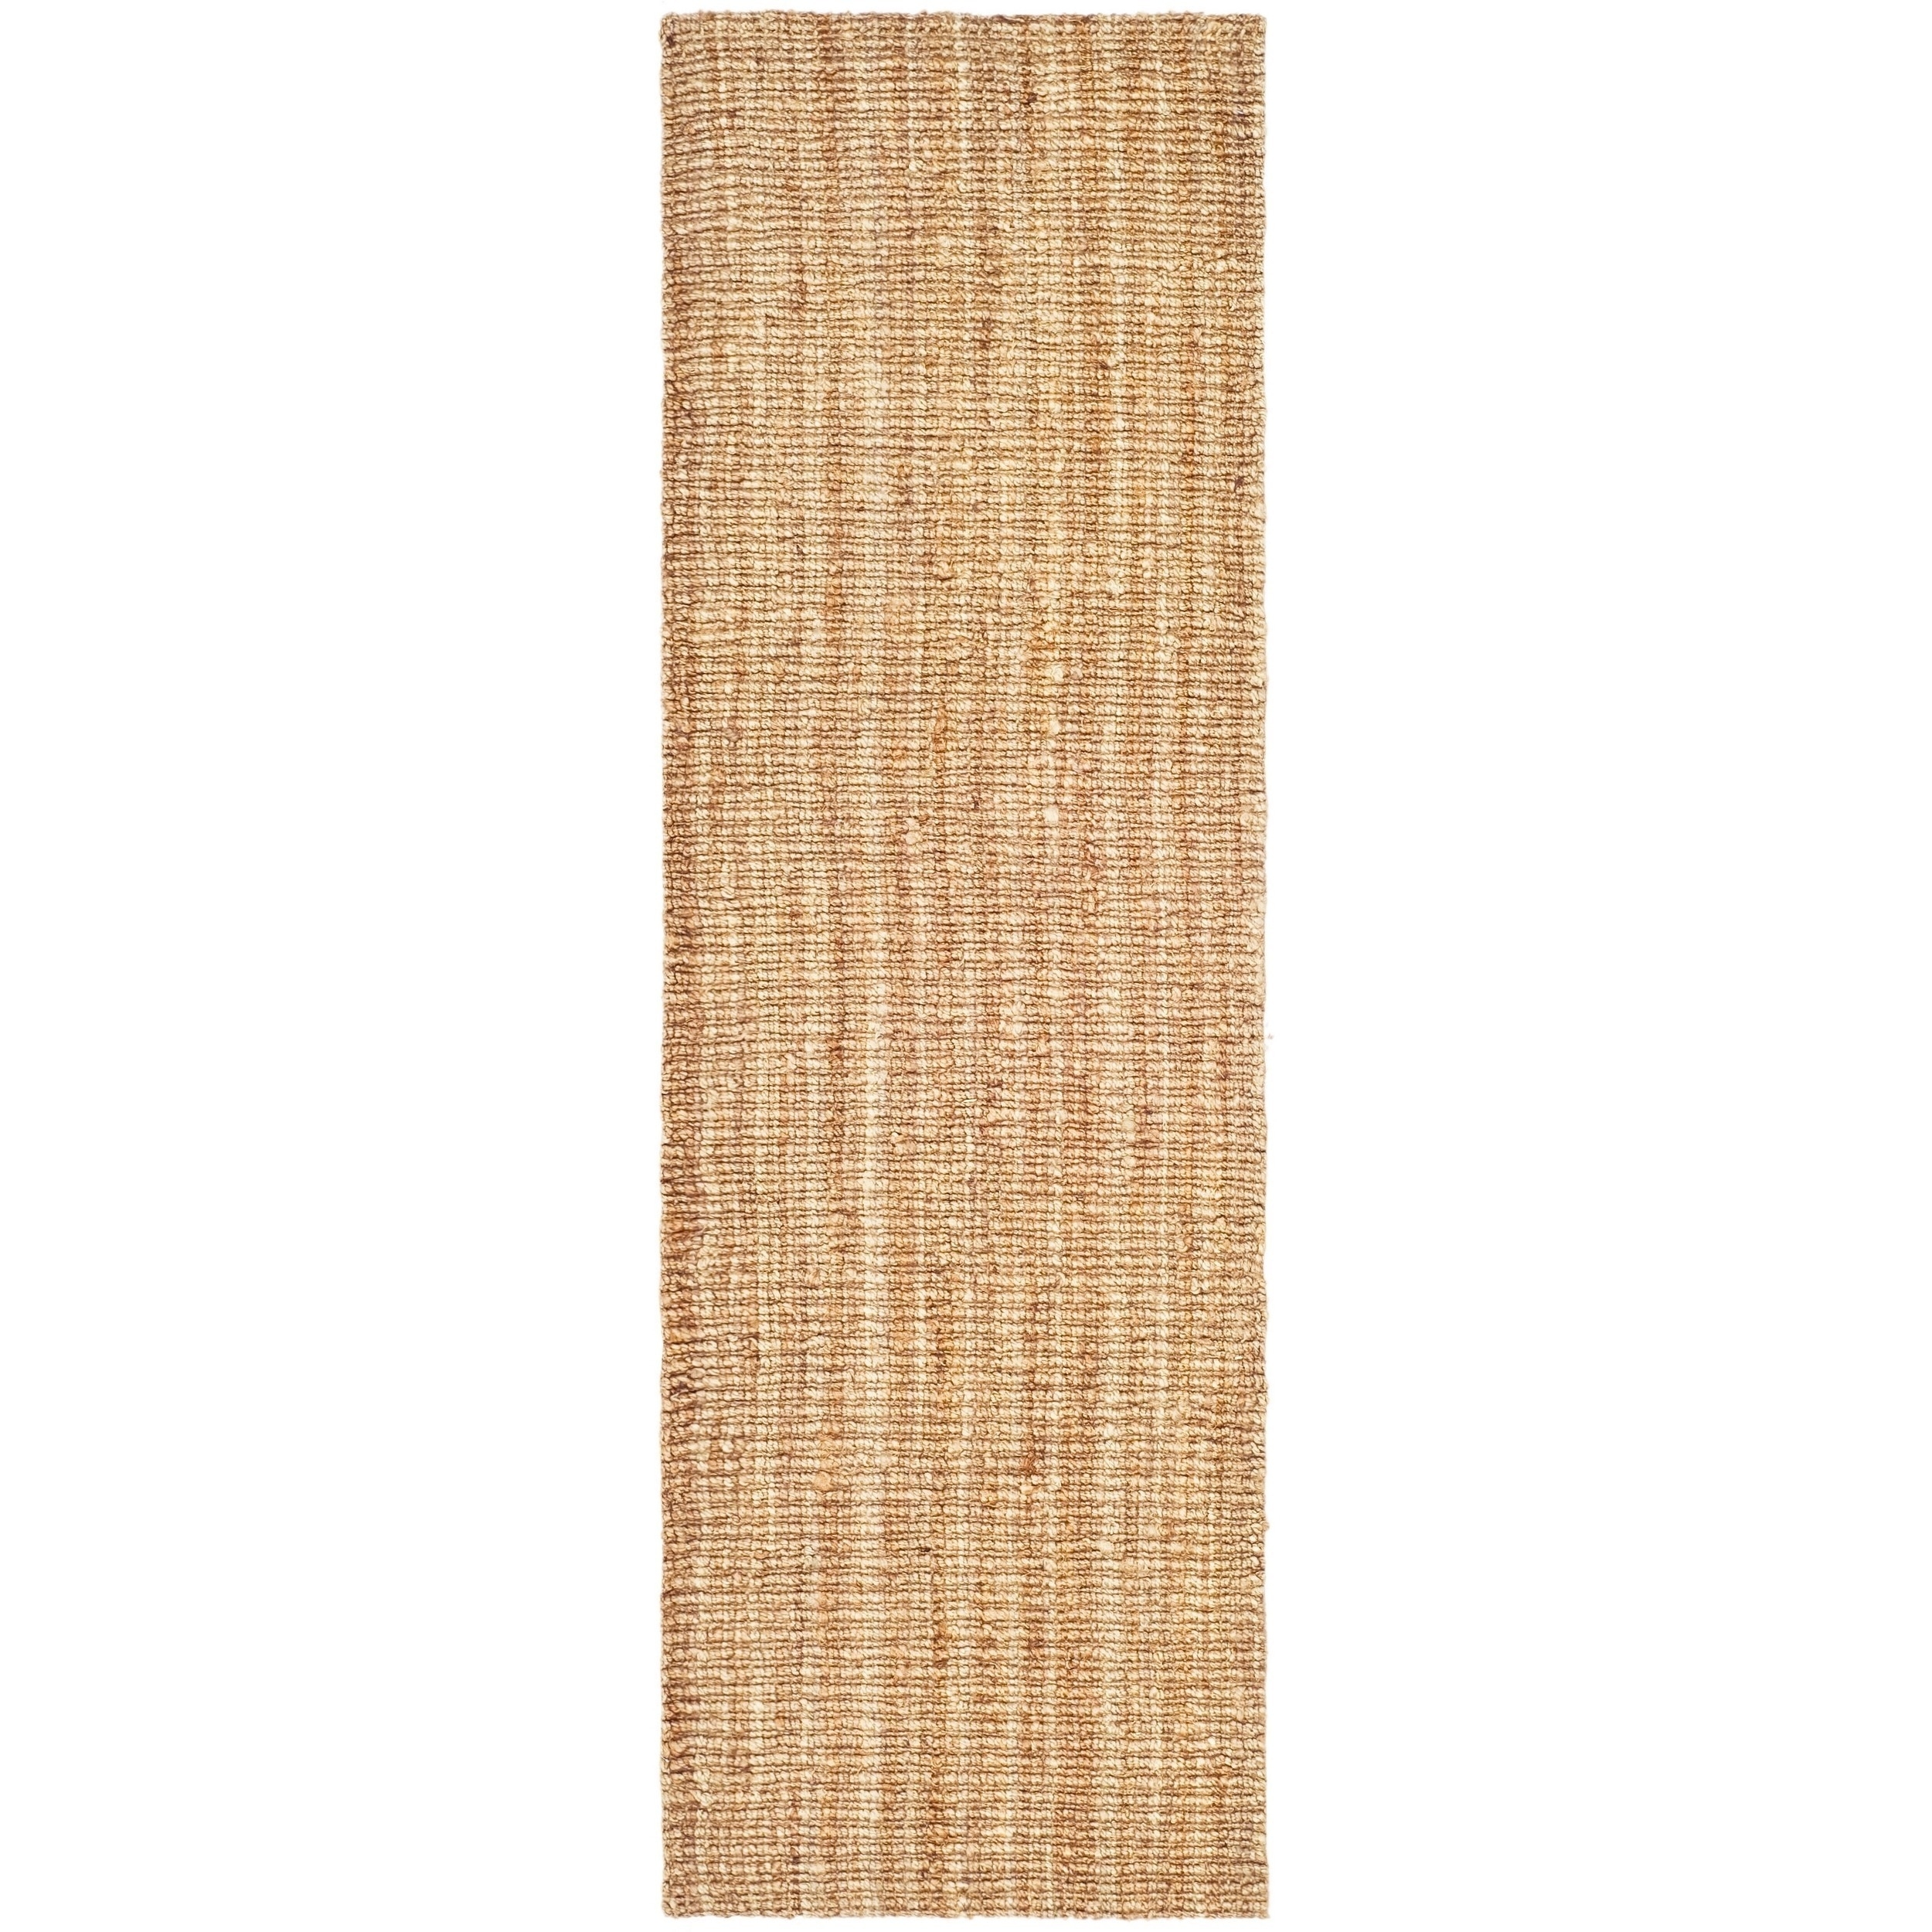 Safavieh Natural Fiber Hand-Woven Chunky Jute Runner Rug (2'6 x 8') - Image 3